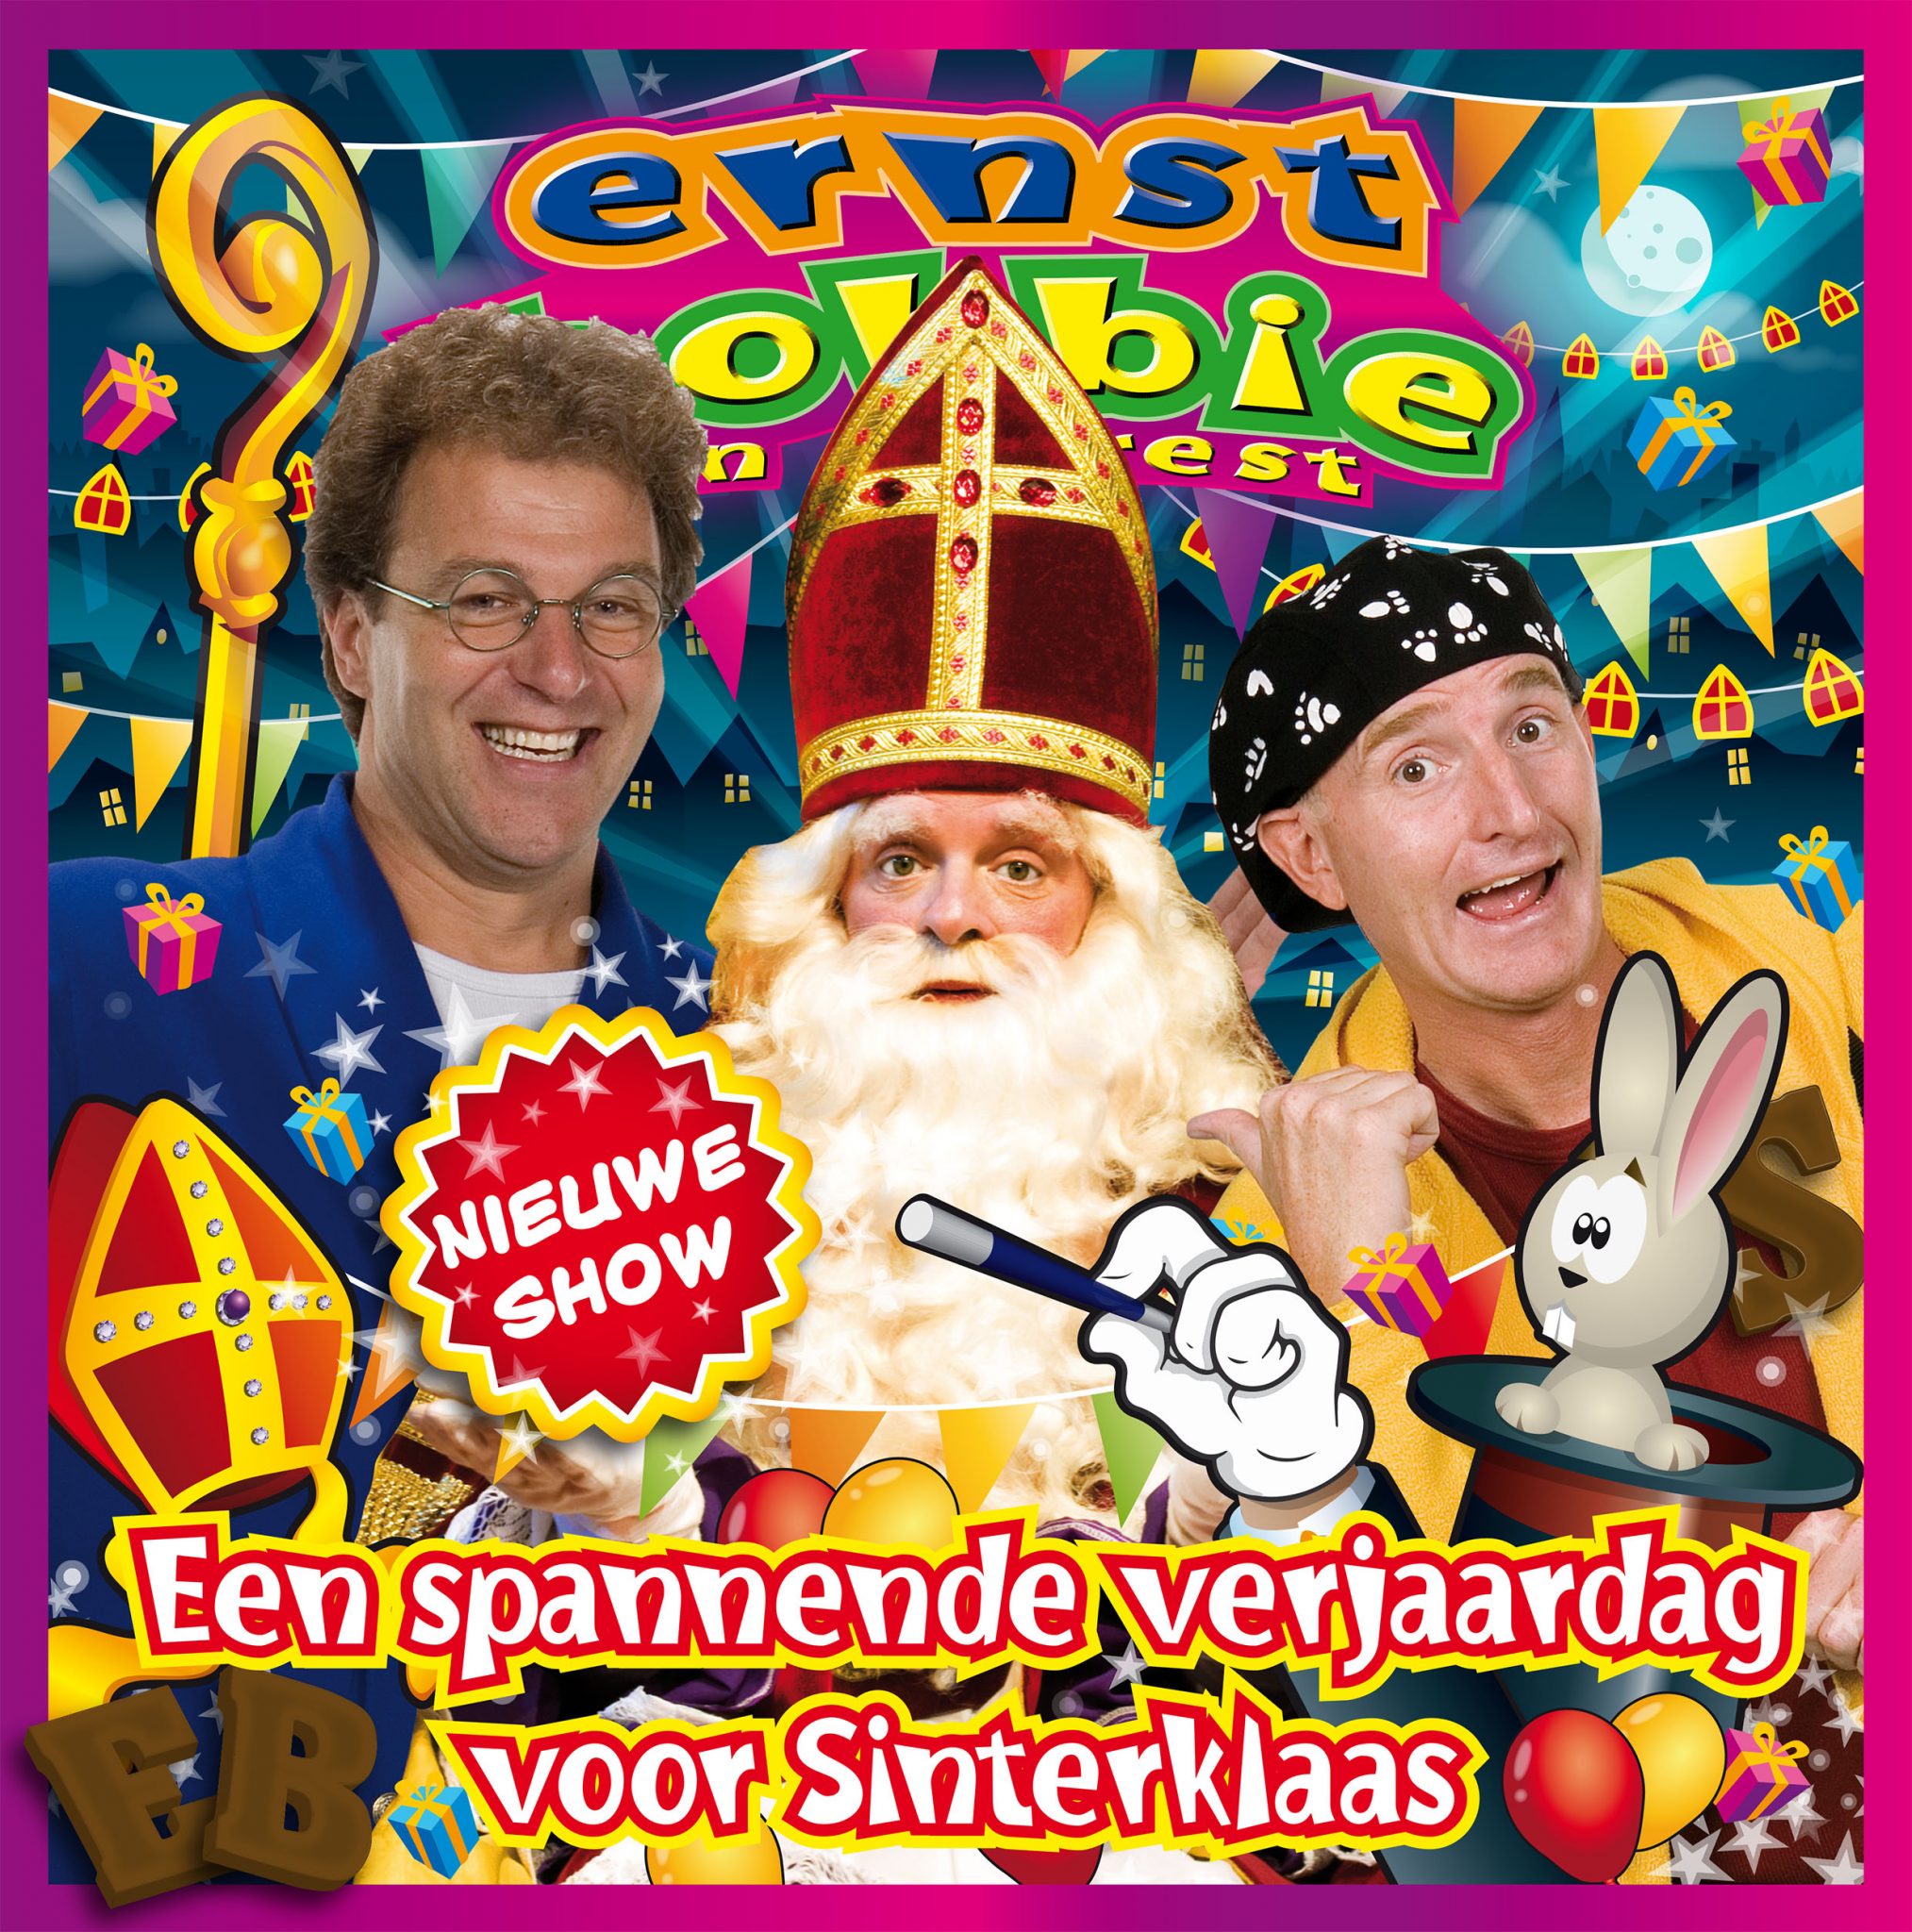 Ernst, Bobbie en de rest Sinterklaasshow